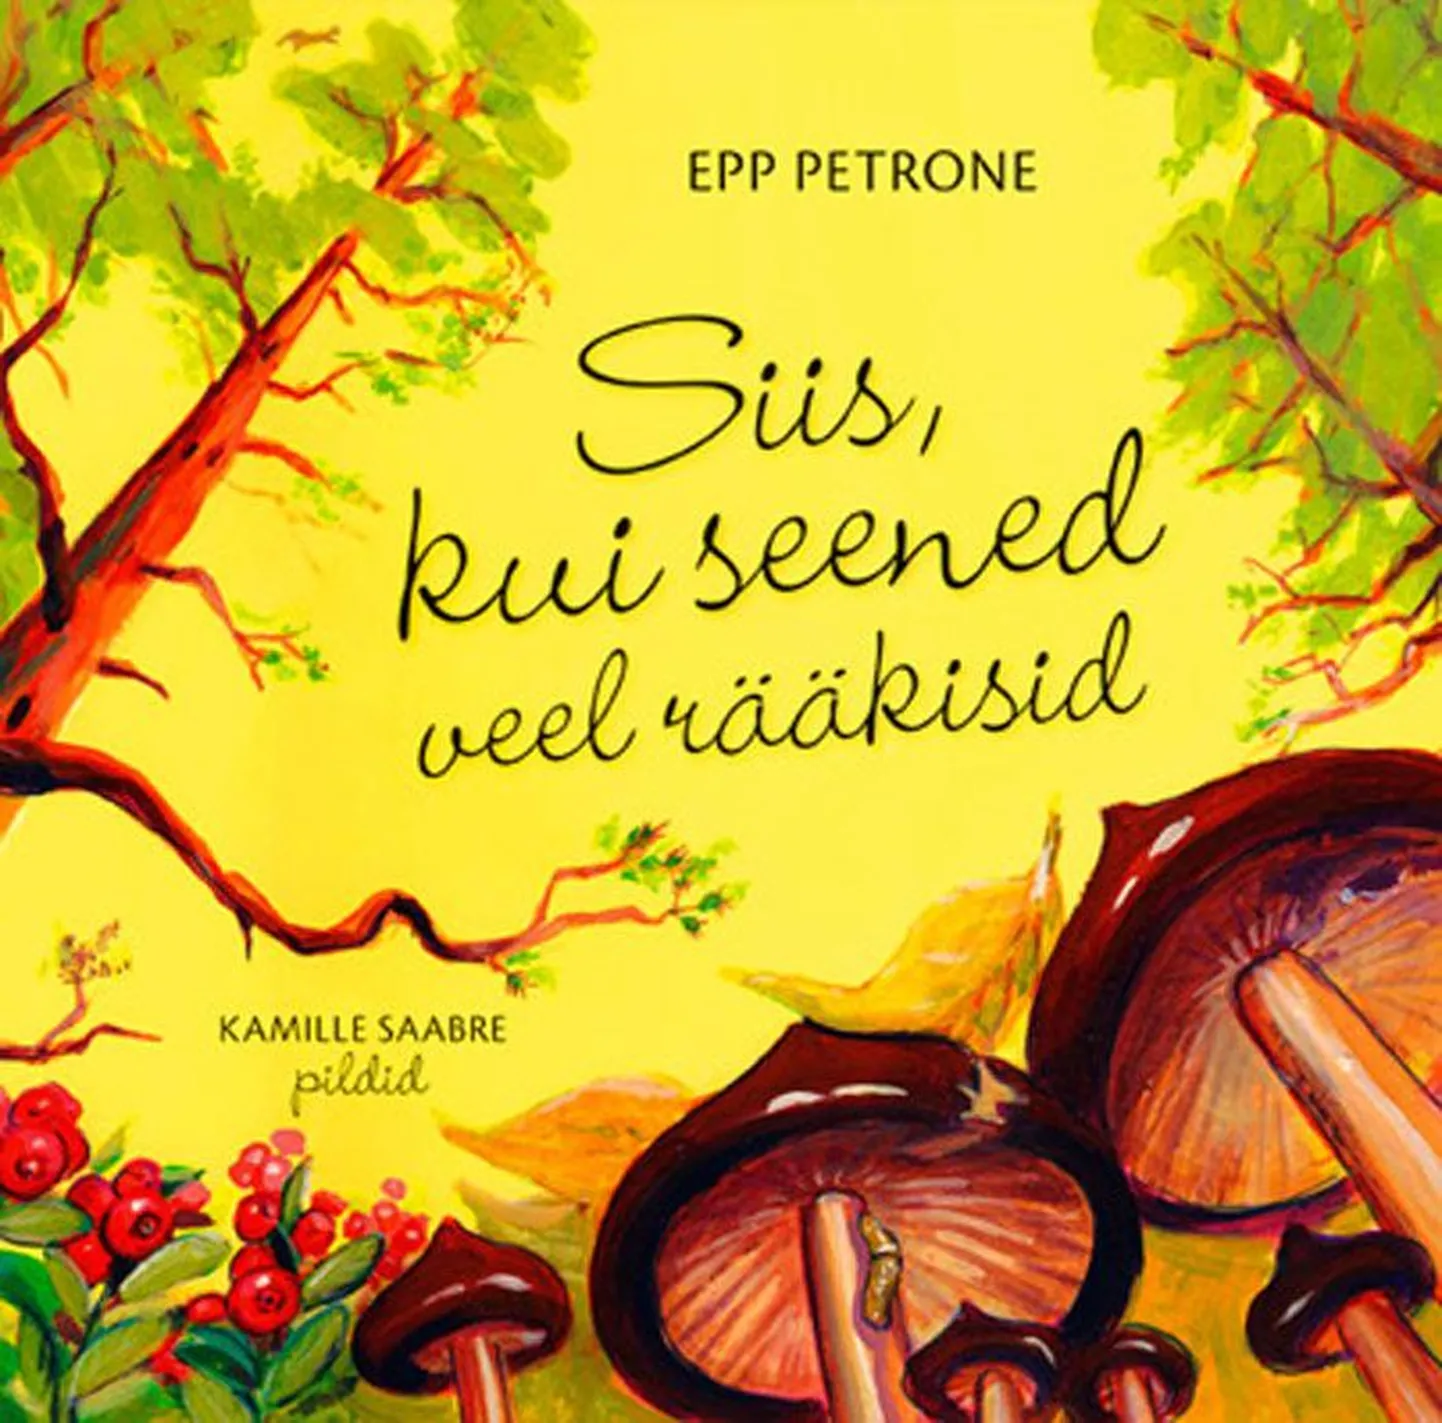 Epp Petrone
«Siis, kui seened veel rääkisid»
Pildid joonistanud Kamille Saabre
Petroneprint, 2009